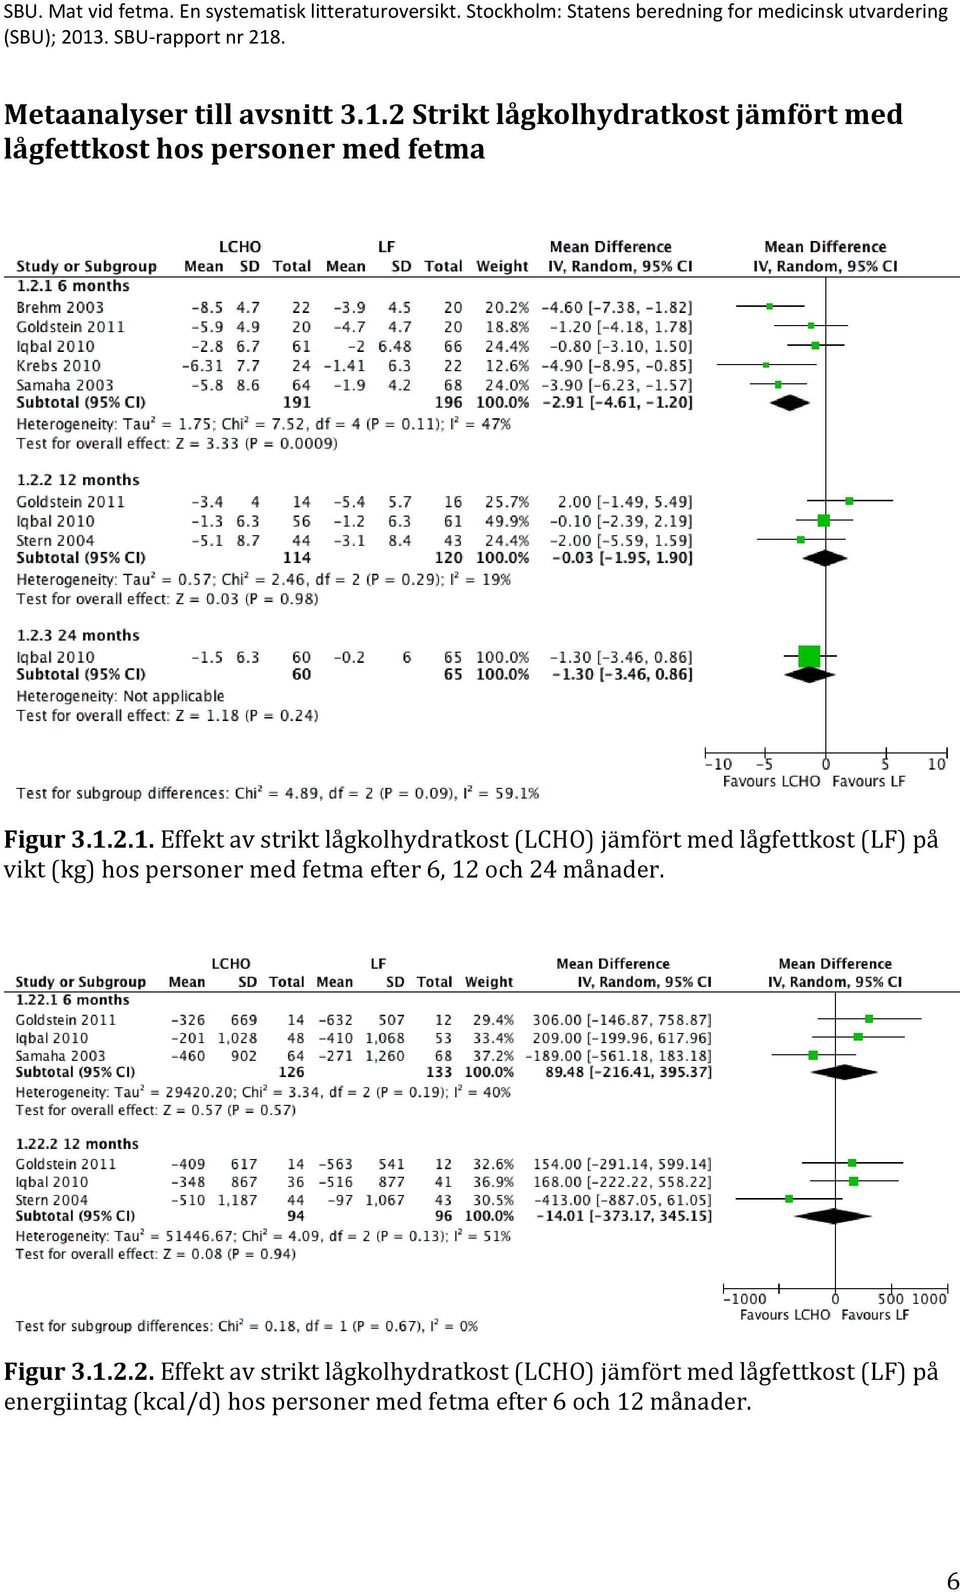 2.1. Effekt av strikt lågkolhydratkost (LCHO) jämfört med lågfettkost (LF) på vikt (kg) hos personer